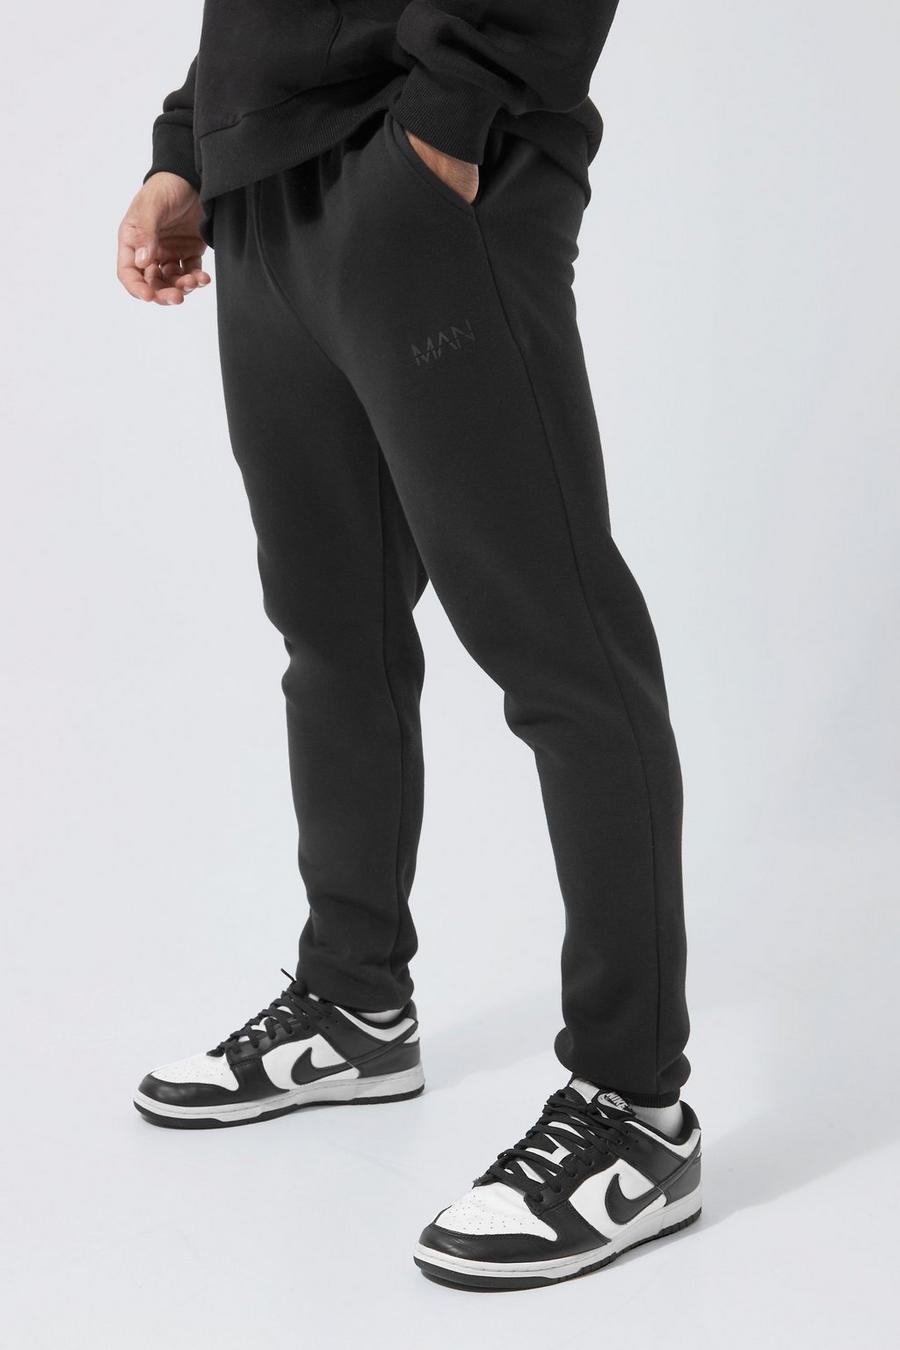 Pantalón deportivo pitillo con franja de letras MAN romanas y colores en bloque, Black negro